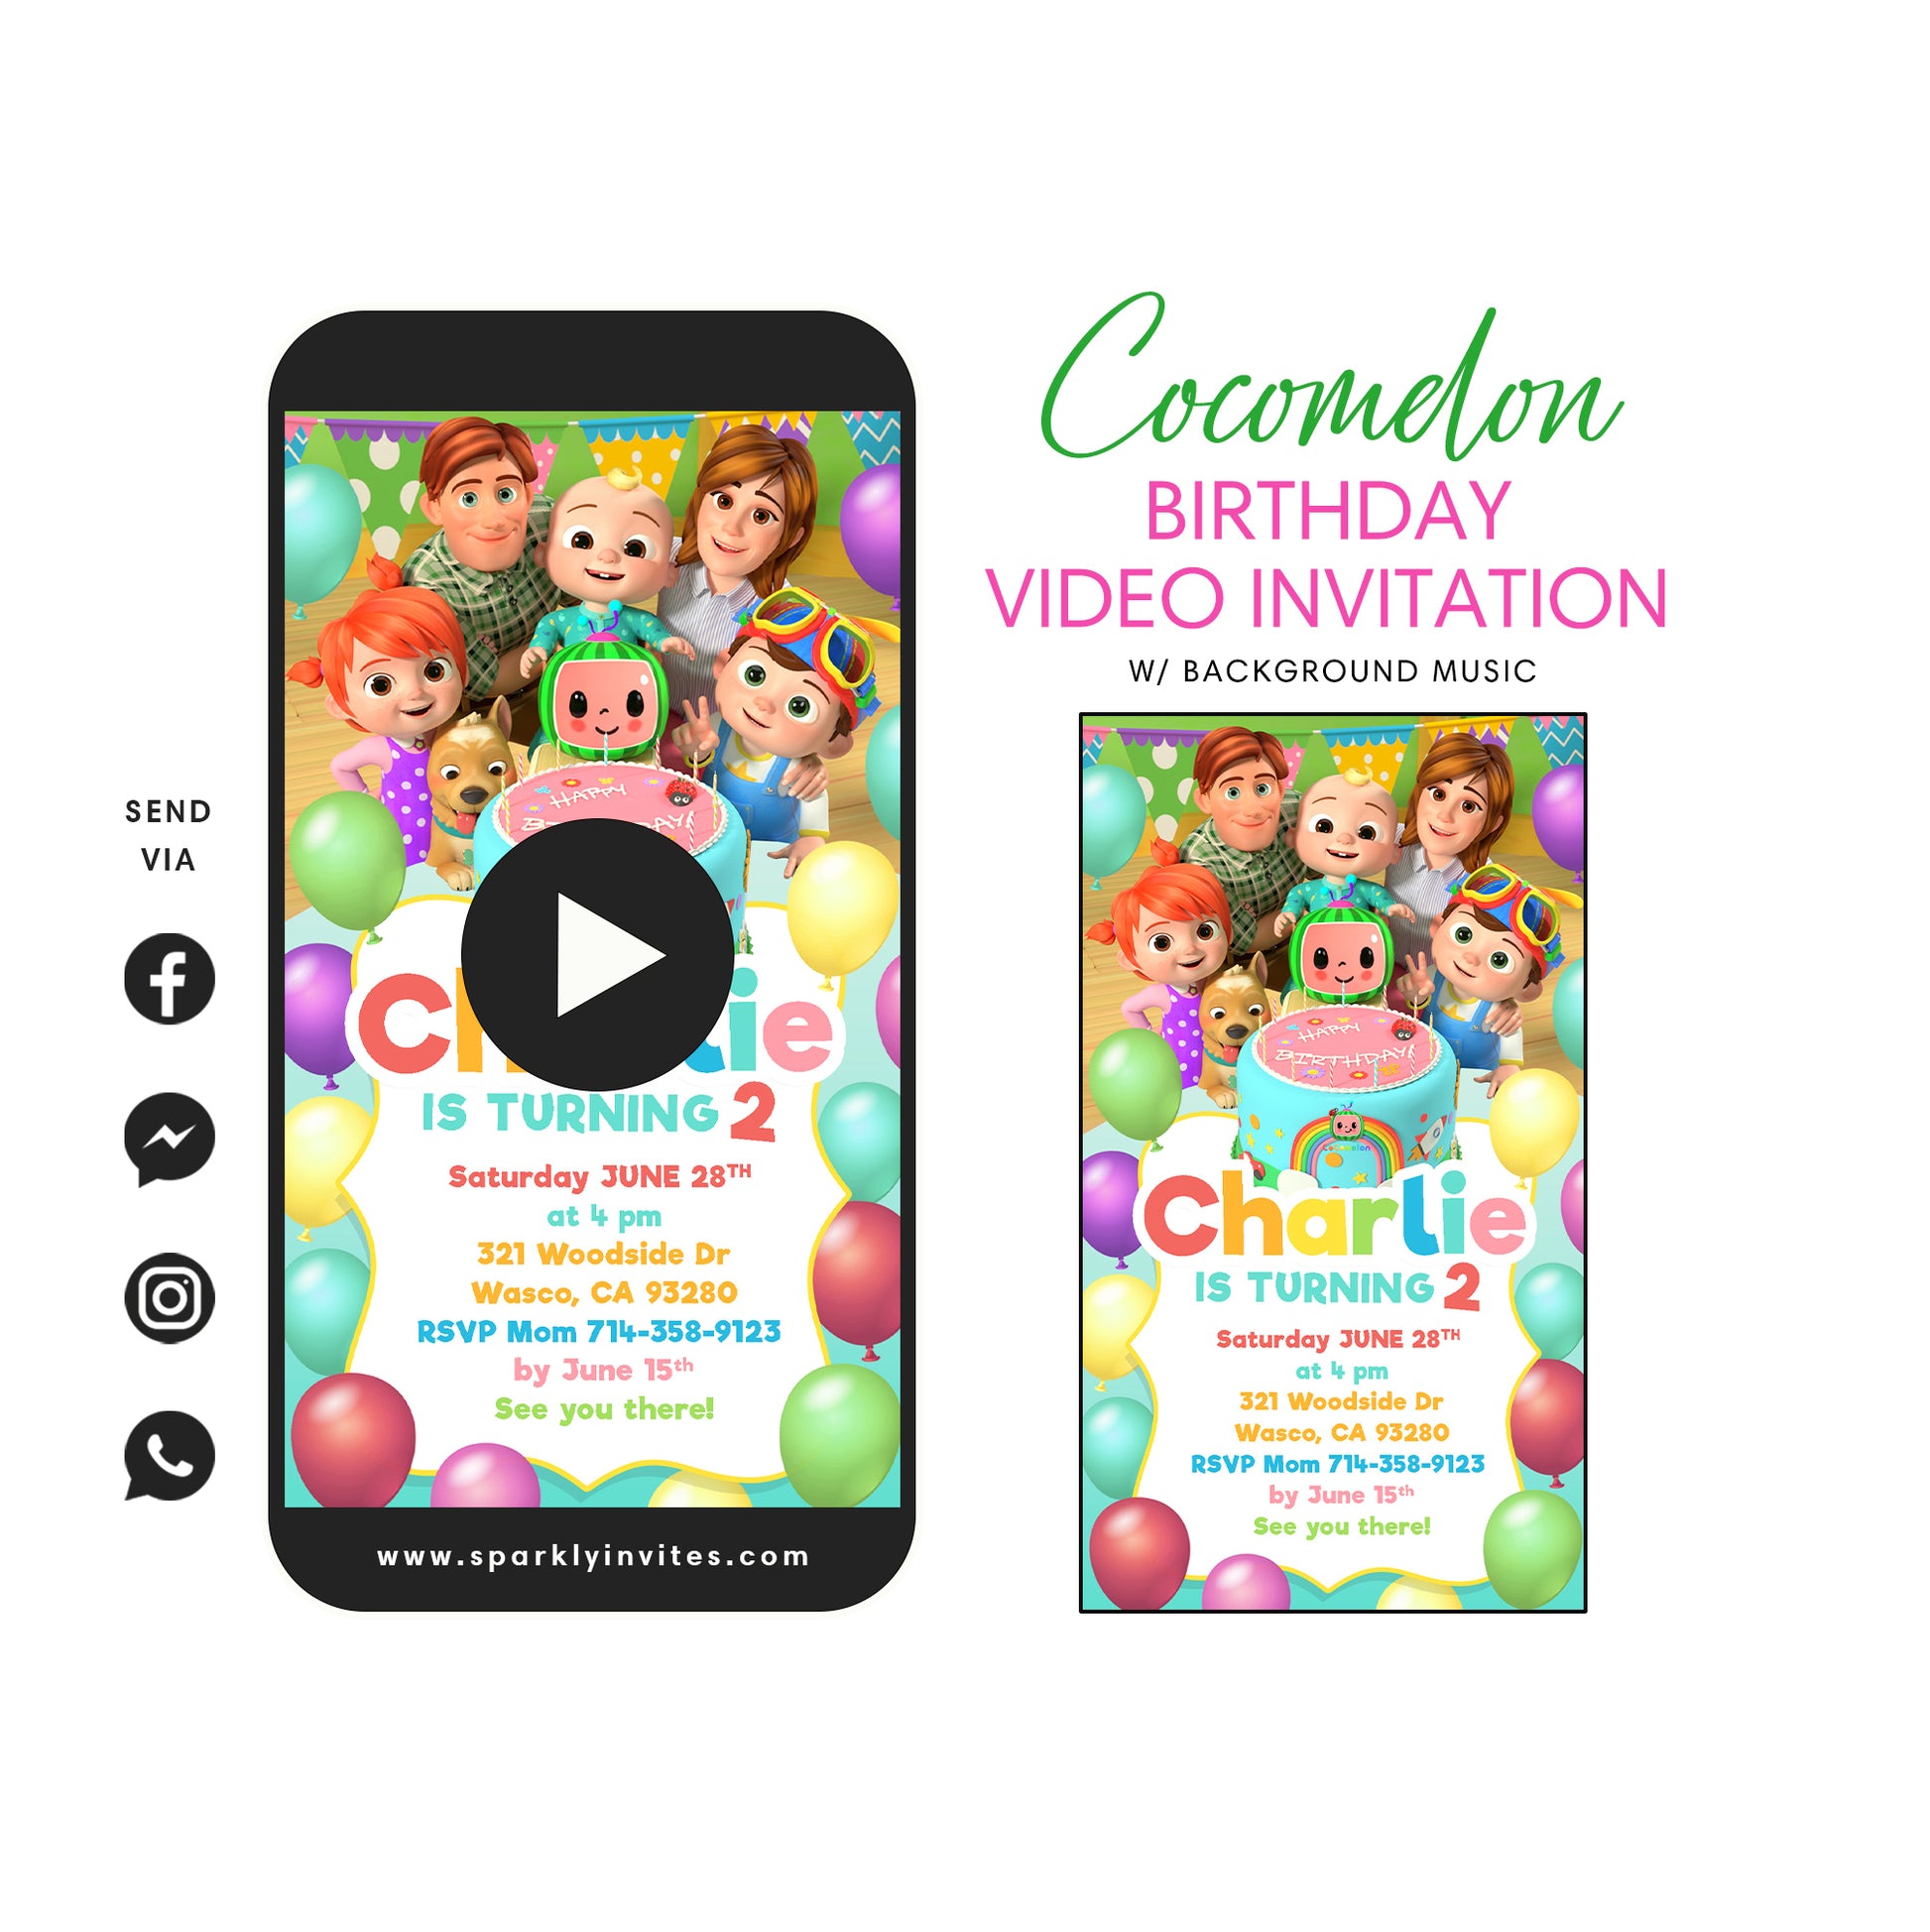 Cocomelon Birthday Party Video Invitation